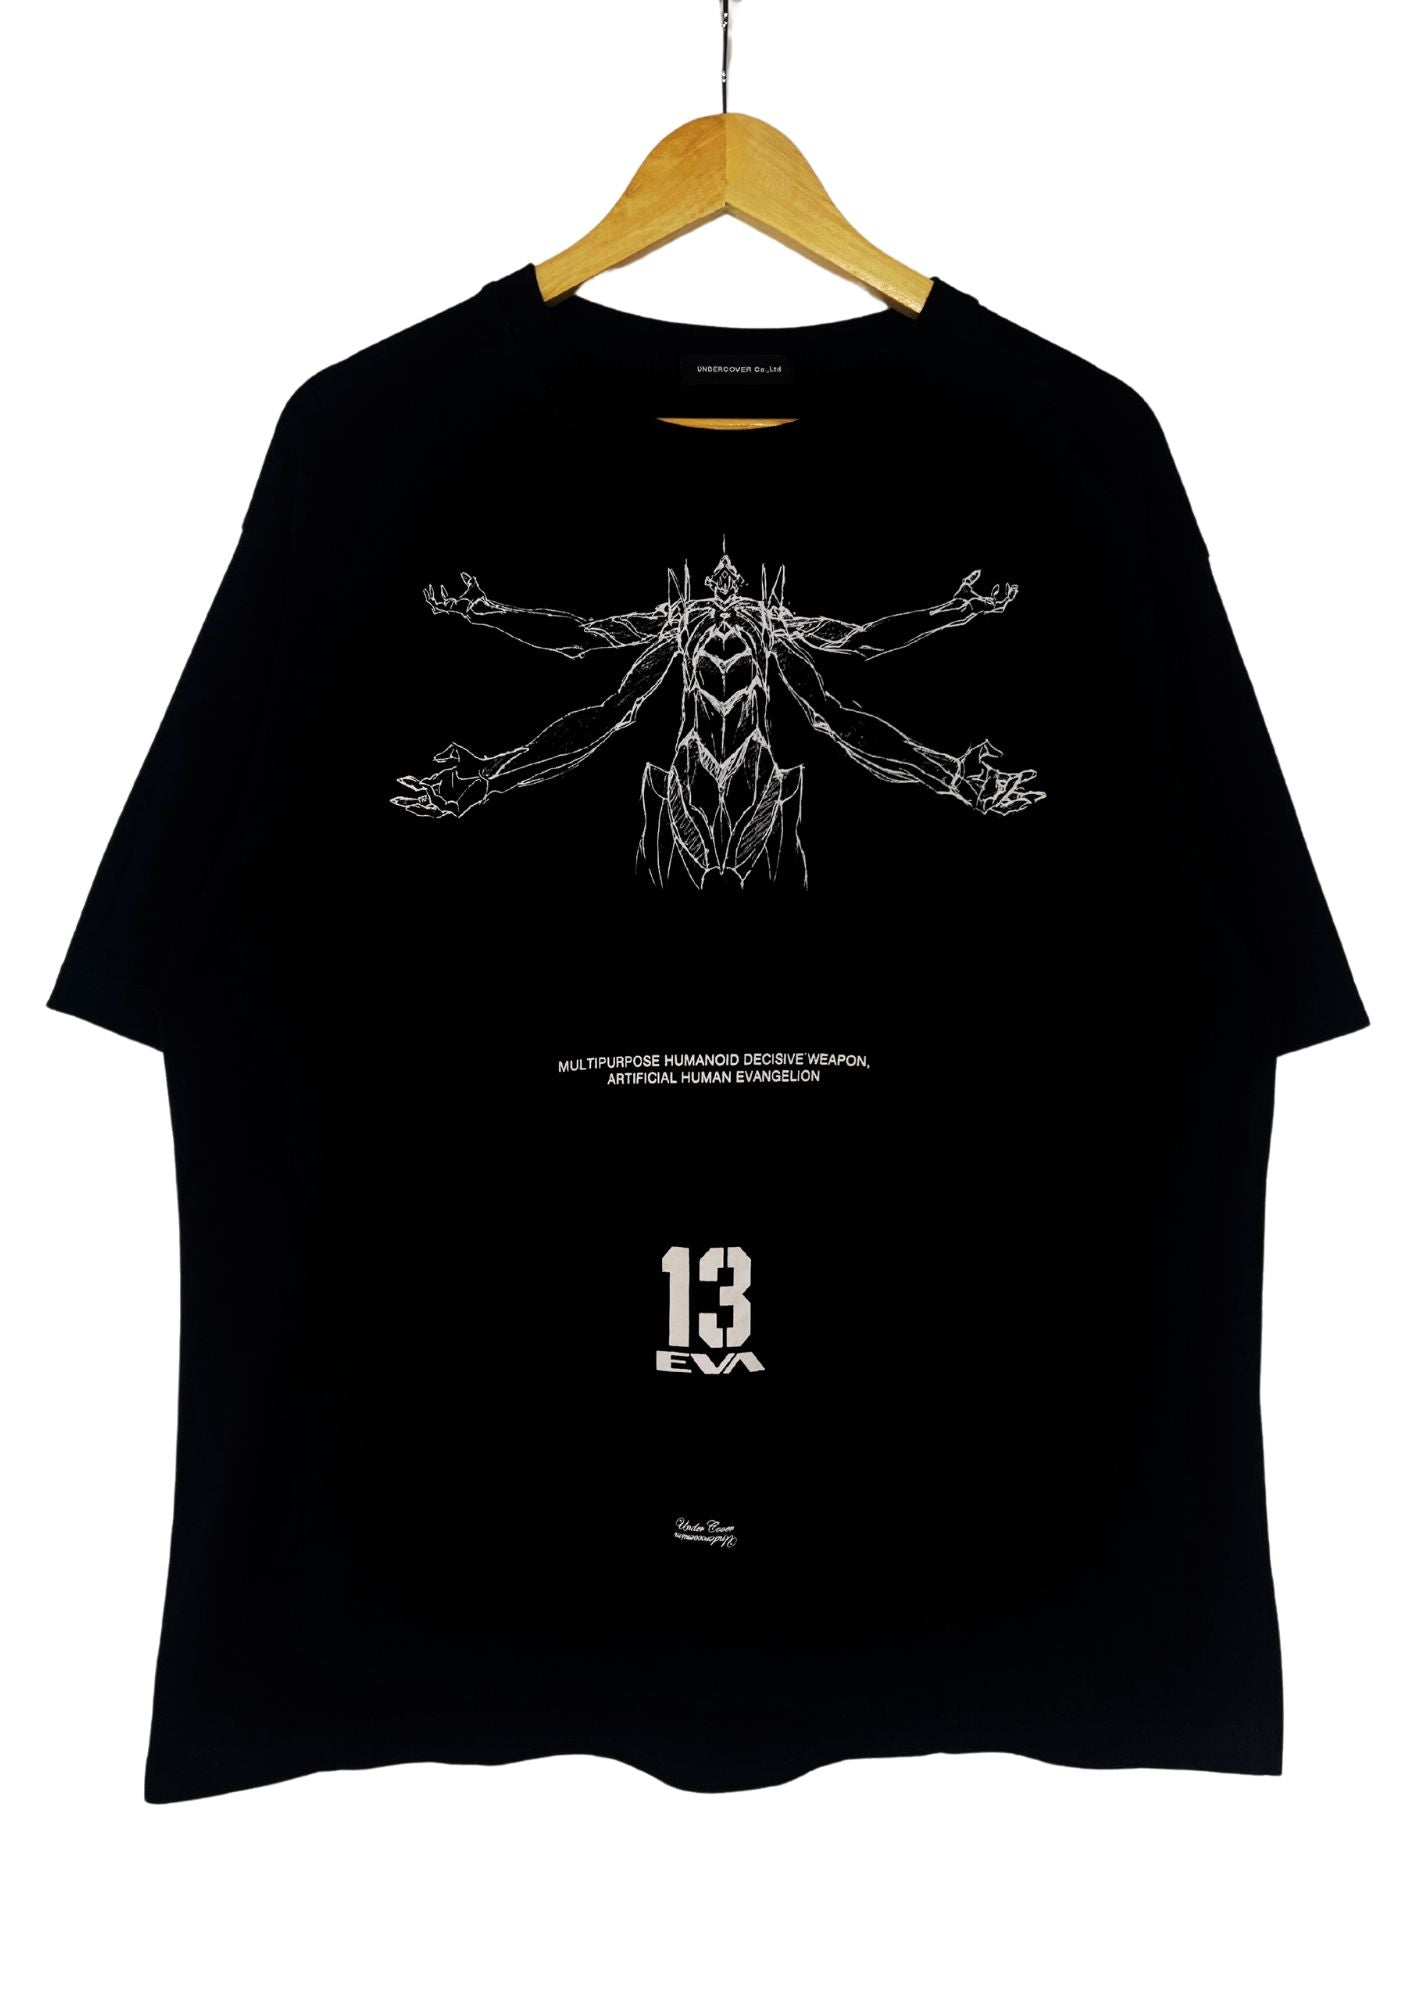 2021 Neon Genesis Evangelion x Undercover Jun Takahashi x EVA 13 T-shirt